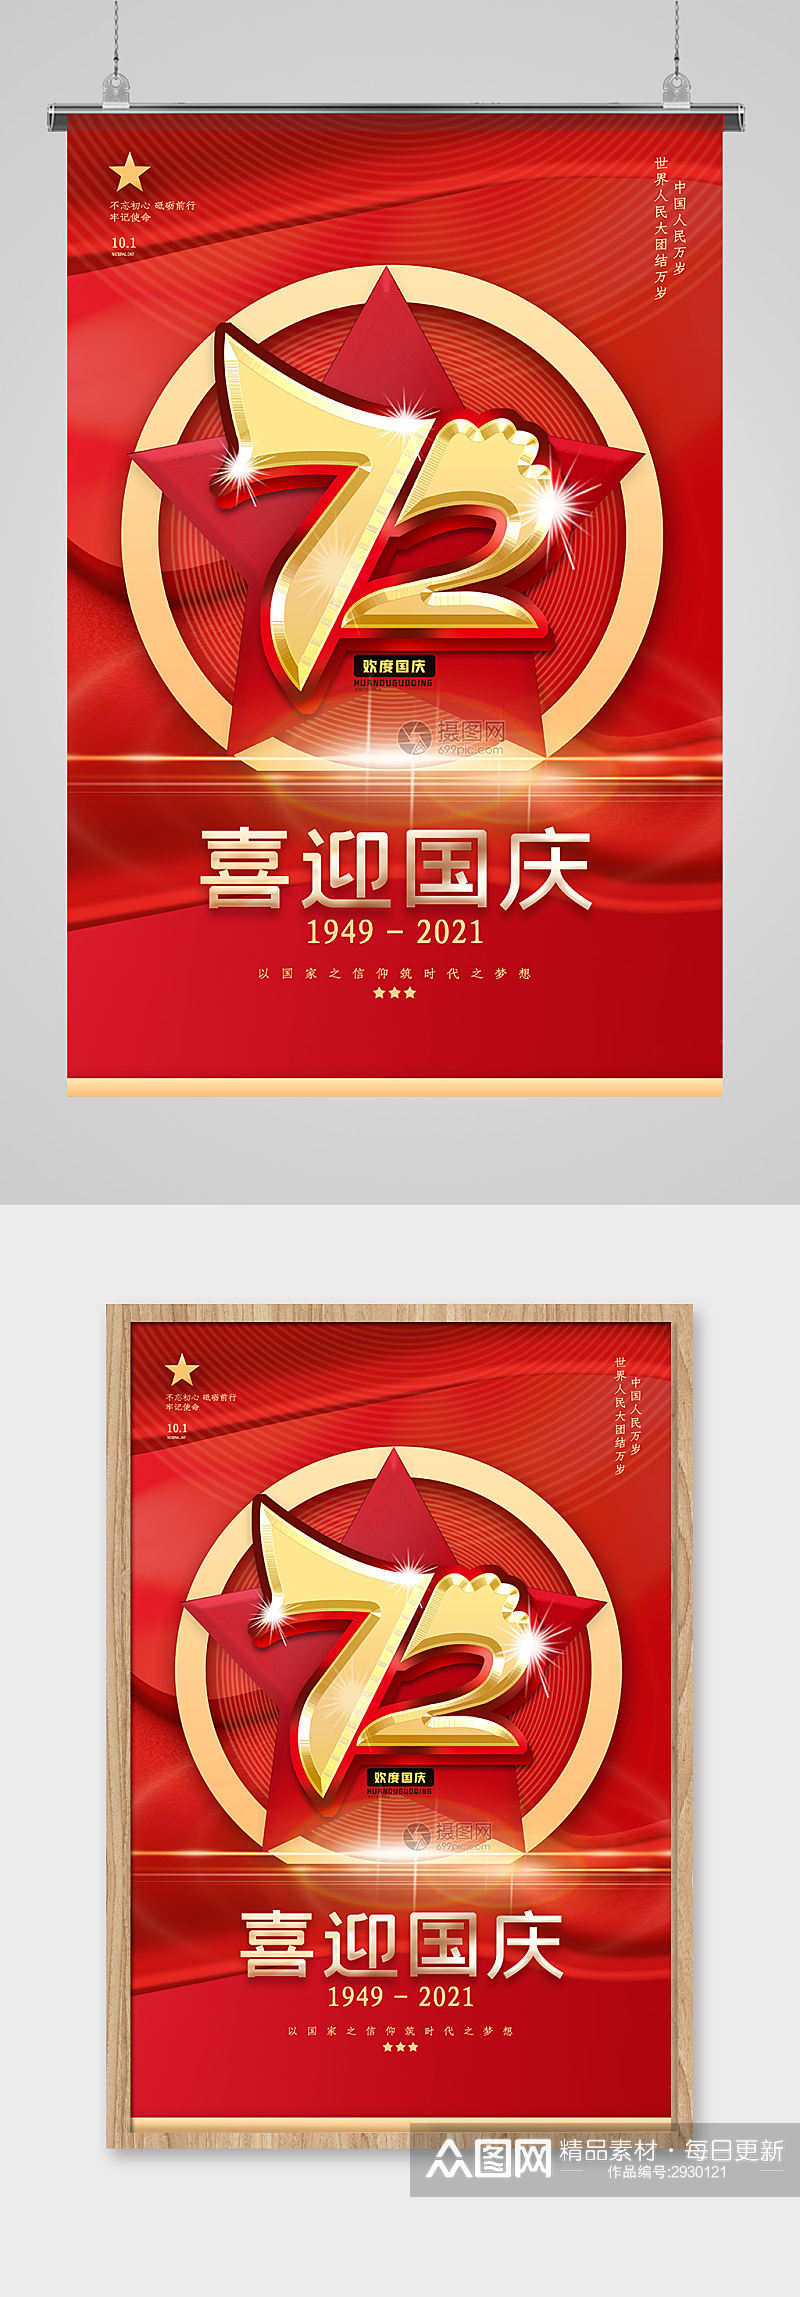 红色喜庆国庆72周年海报设计素材